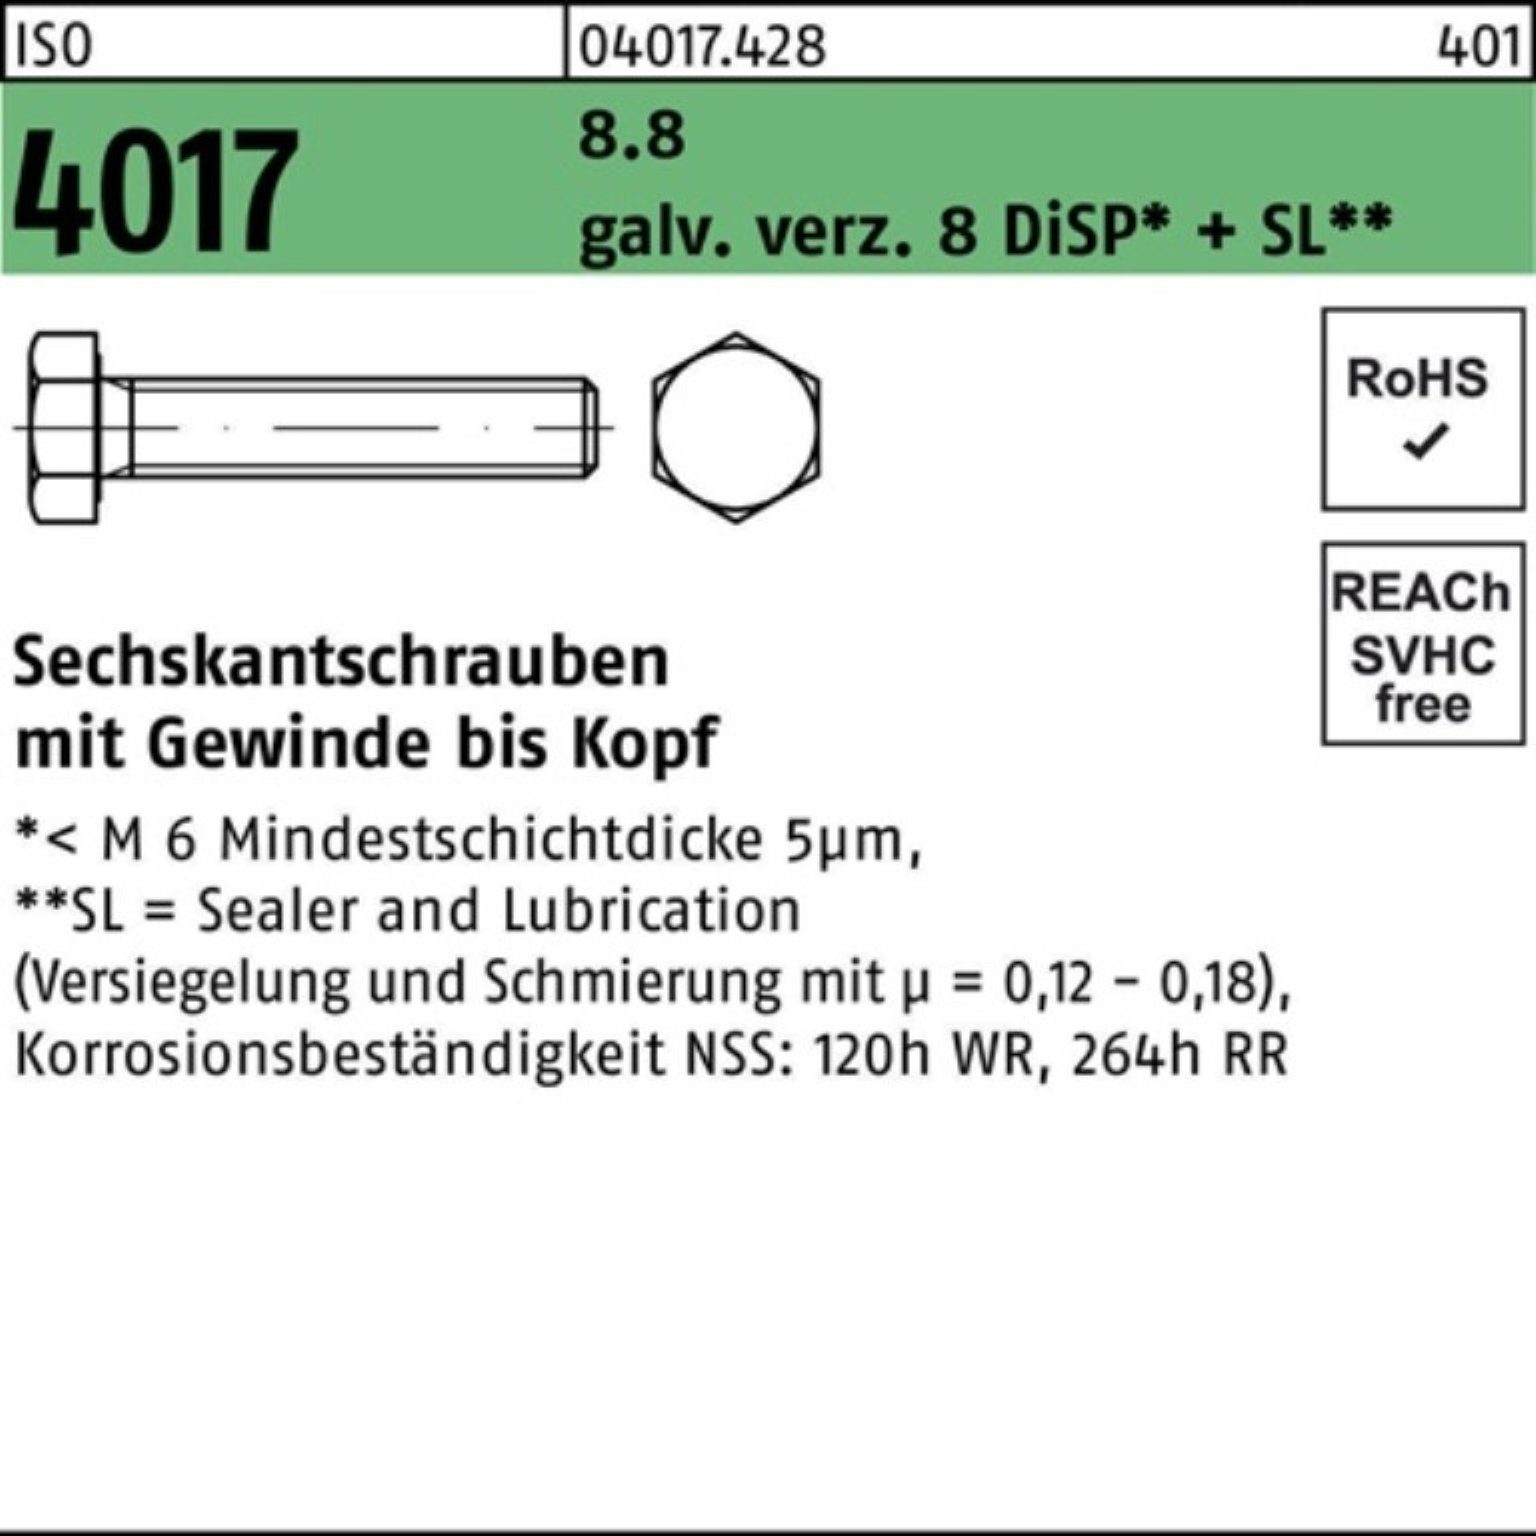 Bufab Sechskantschraube VG Sechskantschraube 35 Pack 4017 8.8 ISO M4x 500er 8 DiSP+ galv.verz